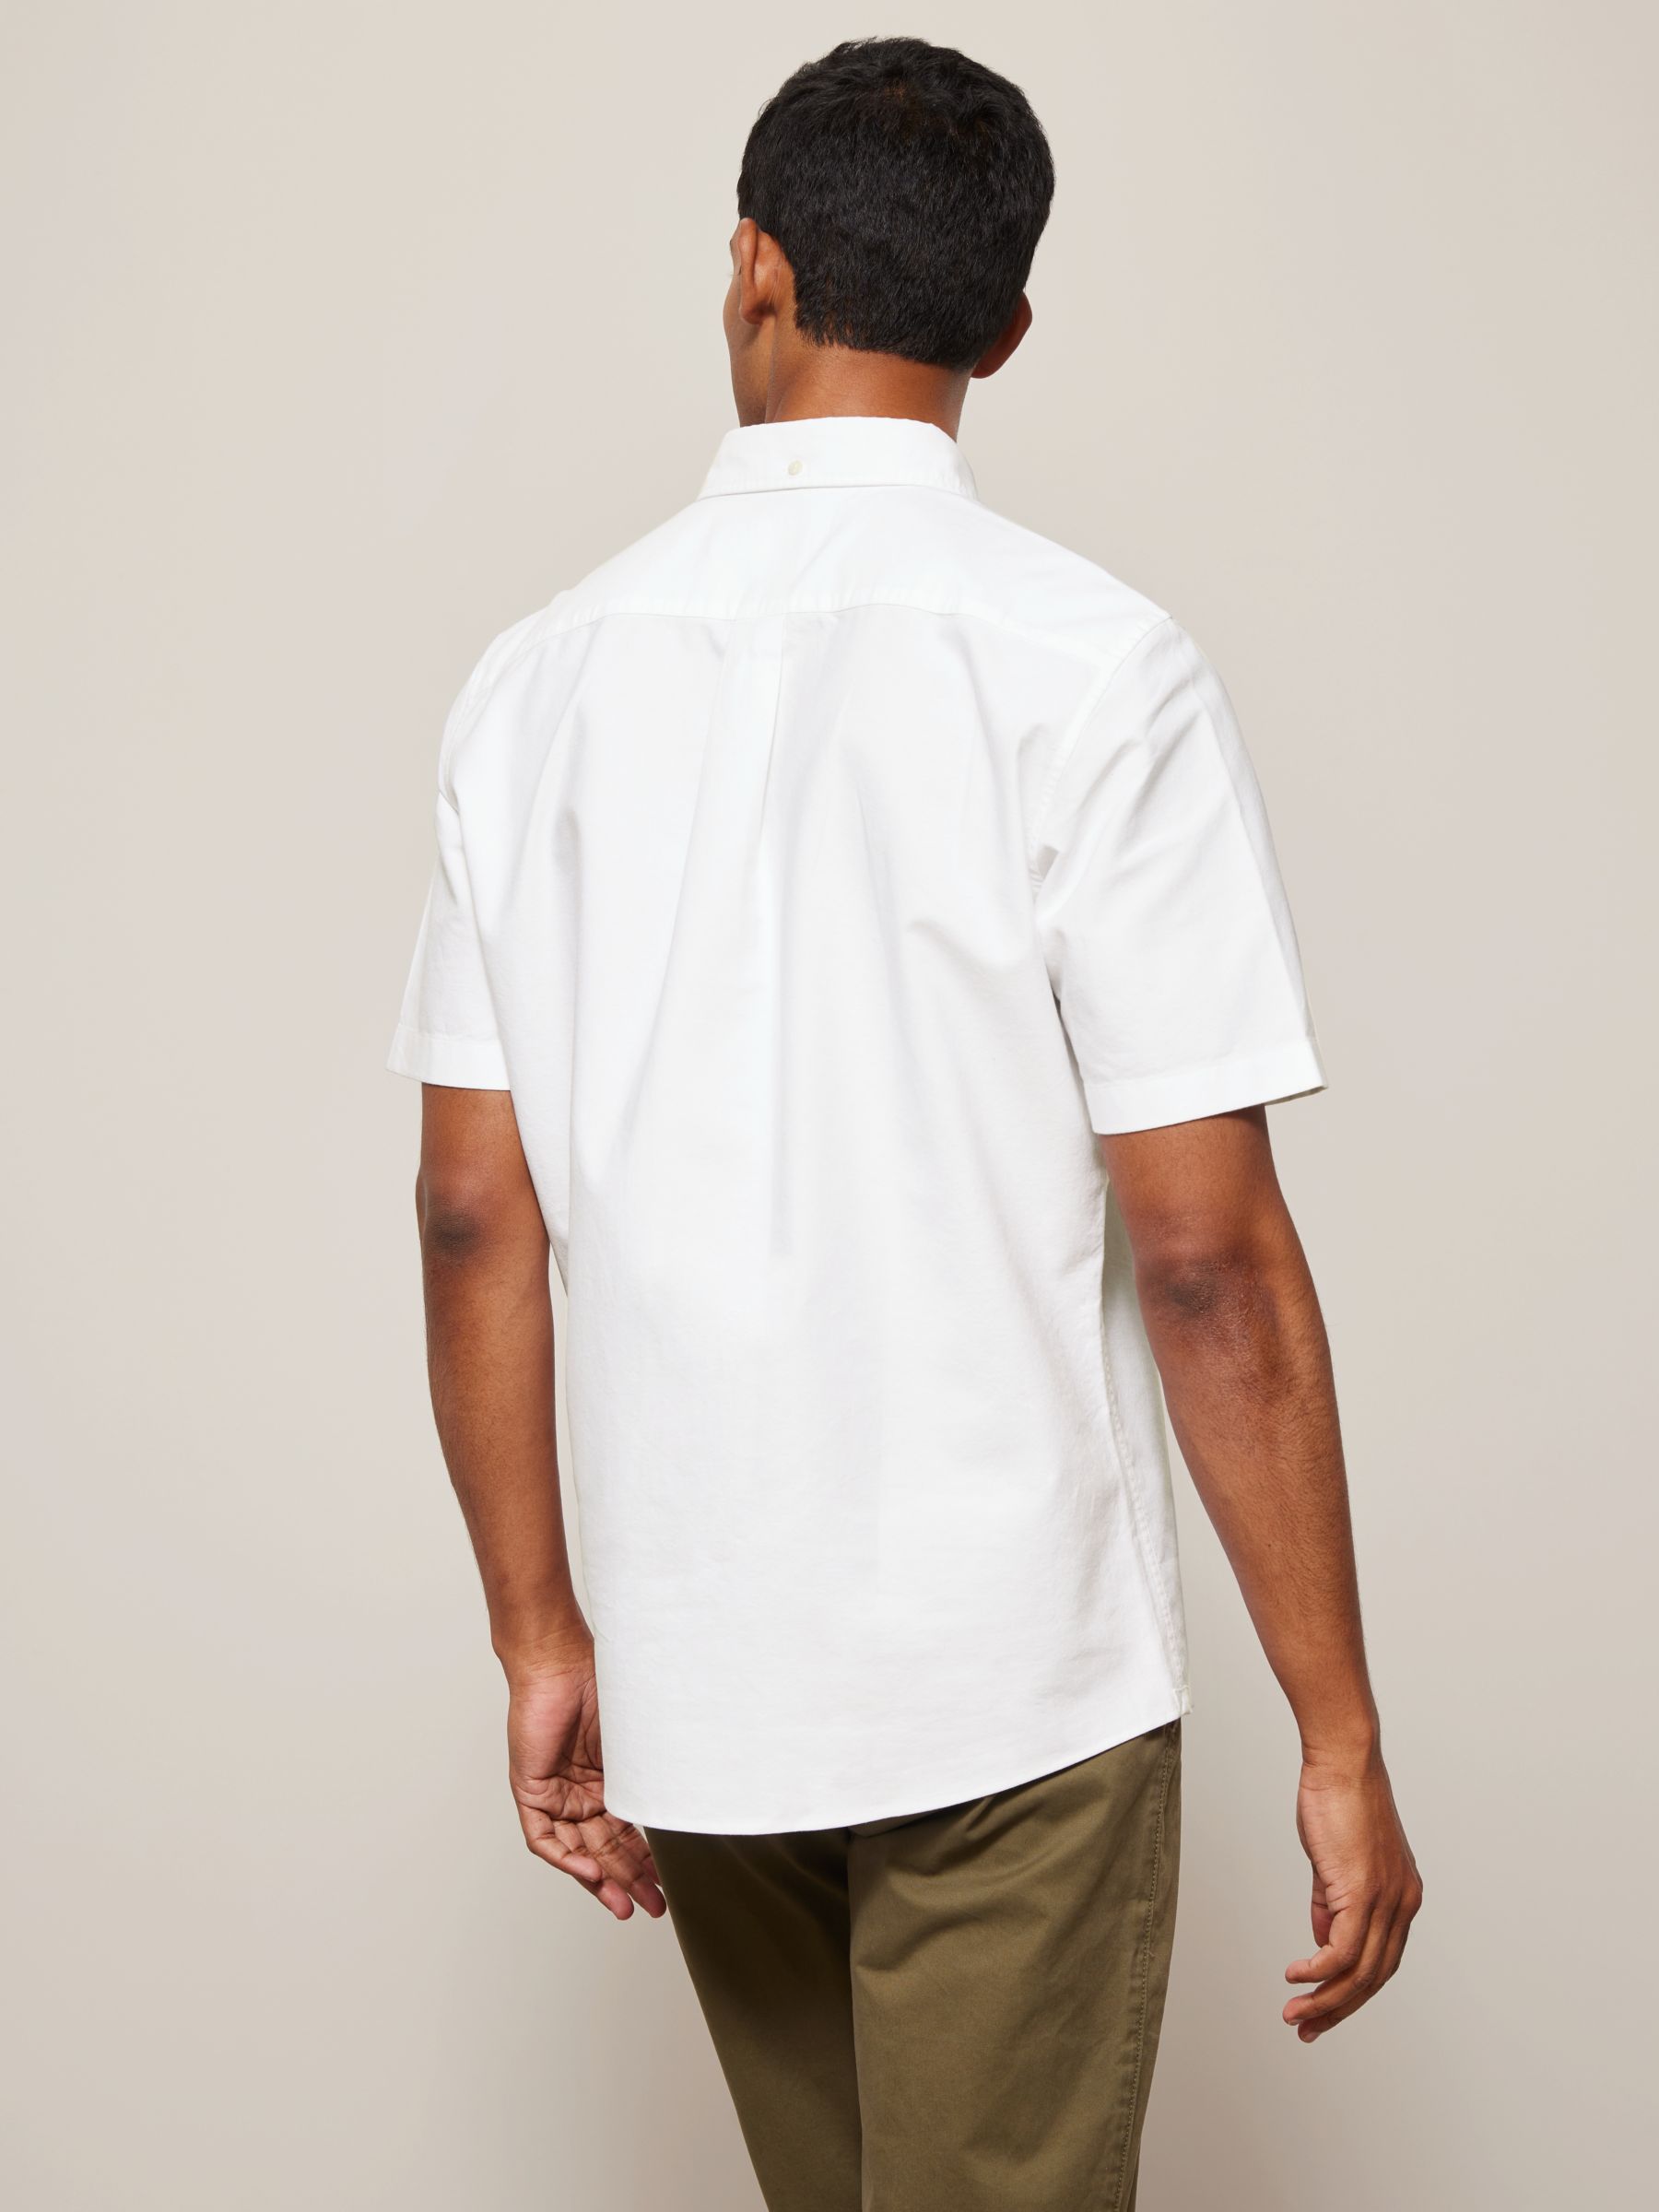 John Lewis Regular Fit Short Sleeve Shirt, White at John Lewis & Partners